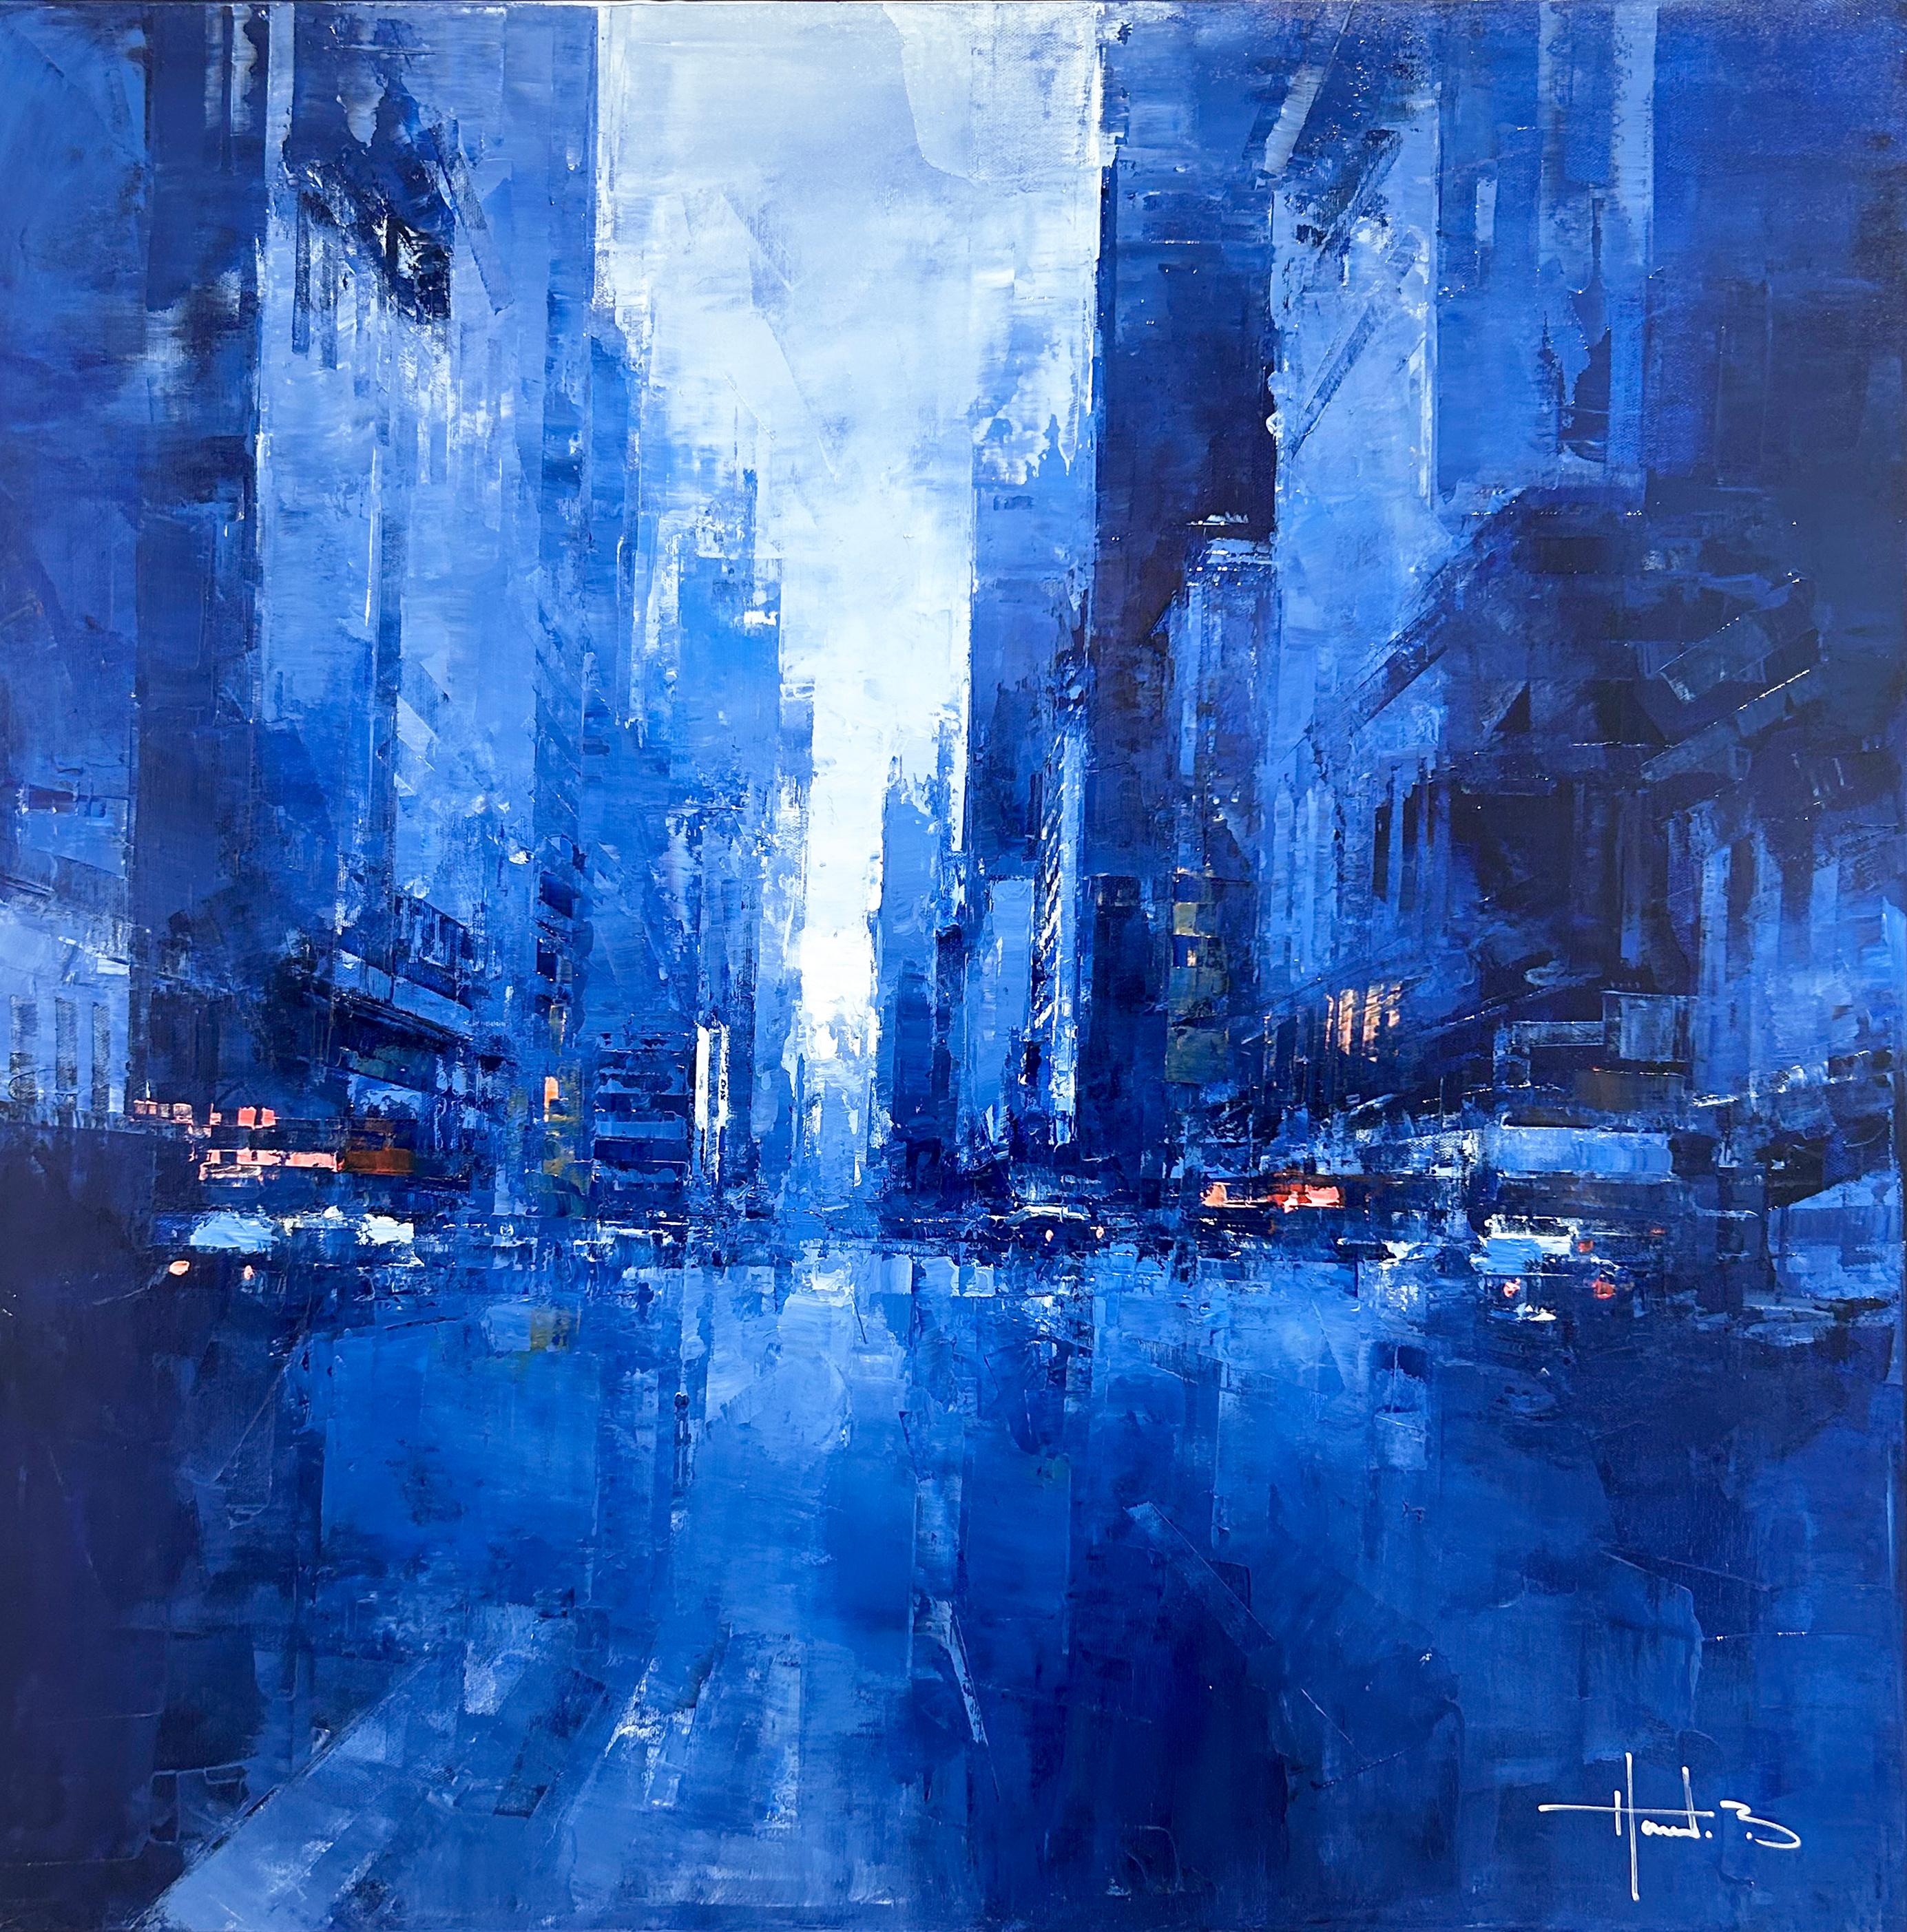 Dieses Werk, "7th Avenue Twilight", ist ein 30x30 Ölgemälde auf Leinwand des Künstlers Benoit Havard, das einen stimmungsvollen Blick auf eine belebte Straße in Manhattan New York City zeigt. Auf beiden Seiten erheben sich Gebäude, die dem